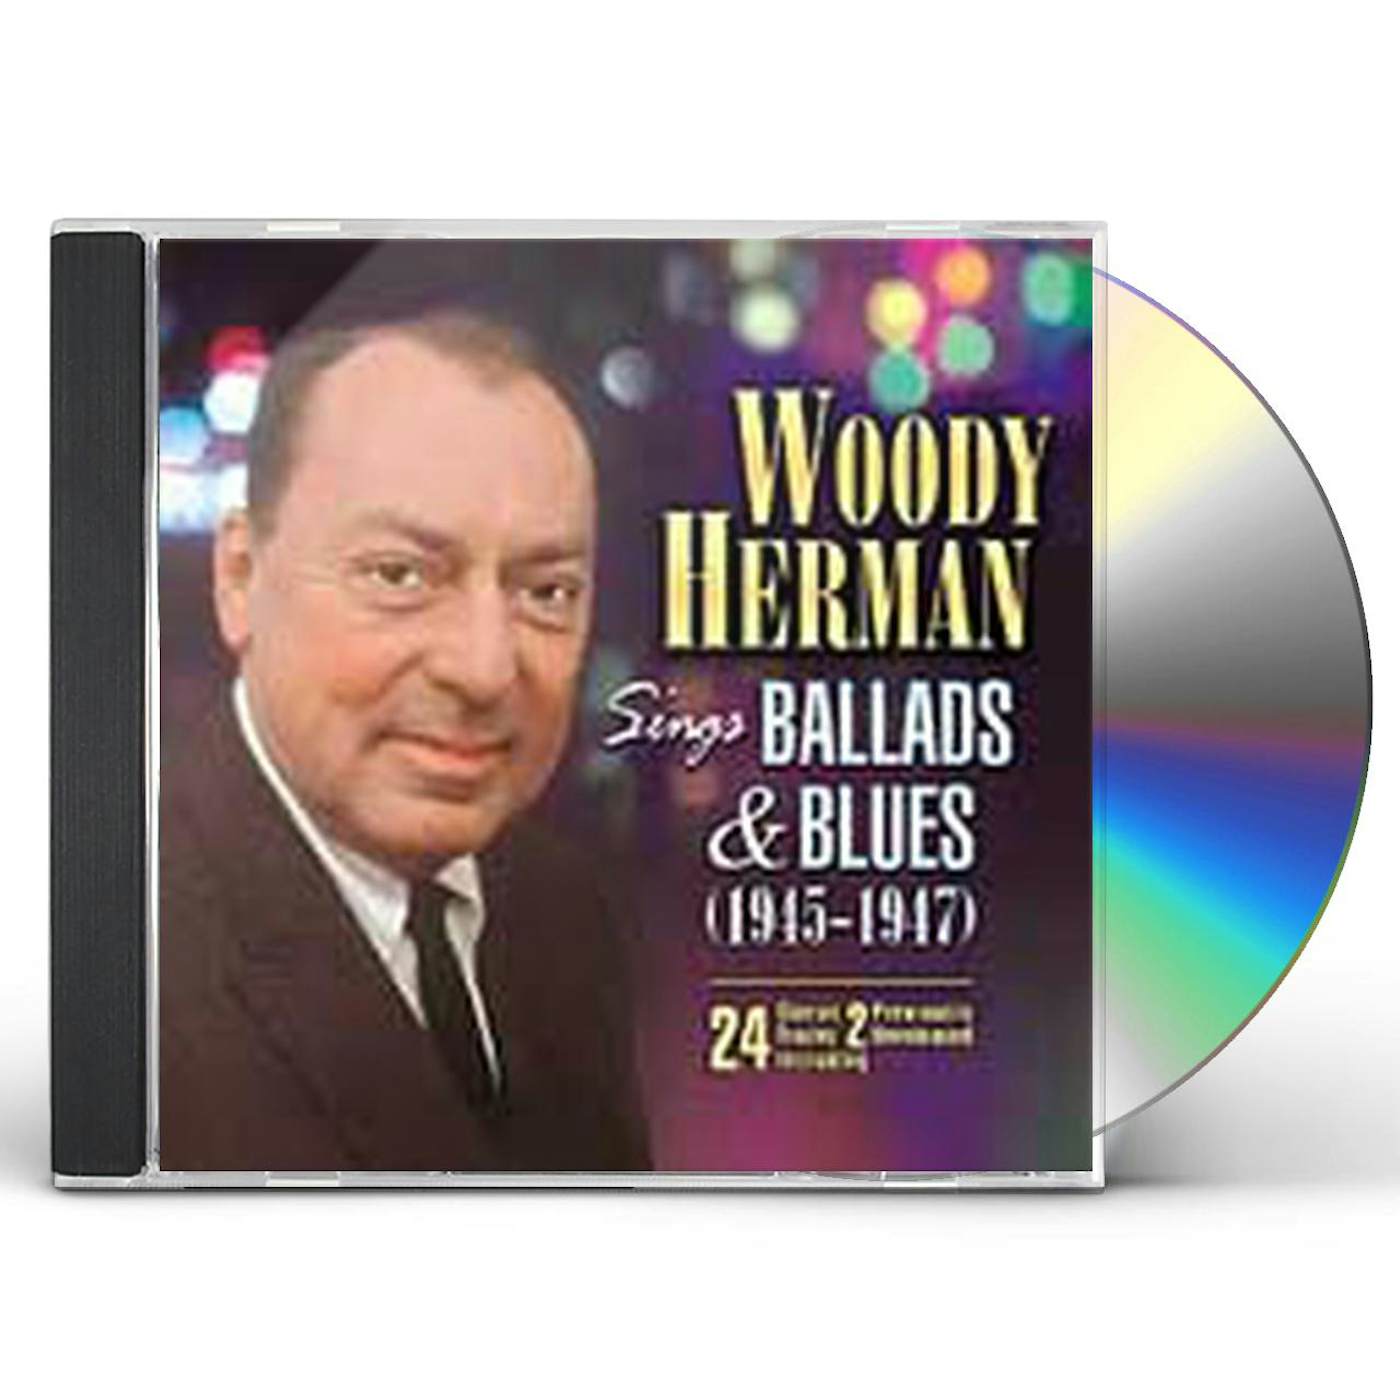 Woody Herman SINGS BALLADS & BLUES CD